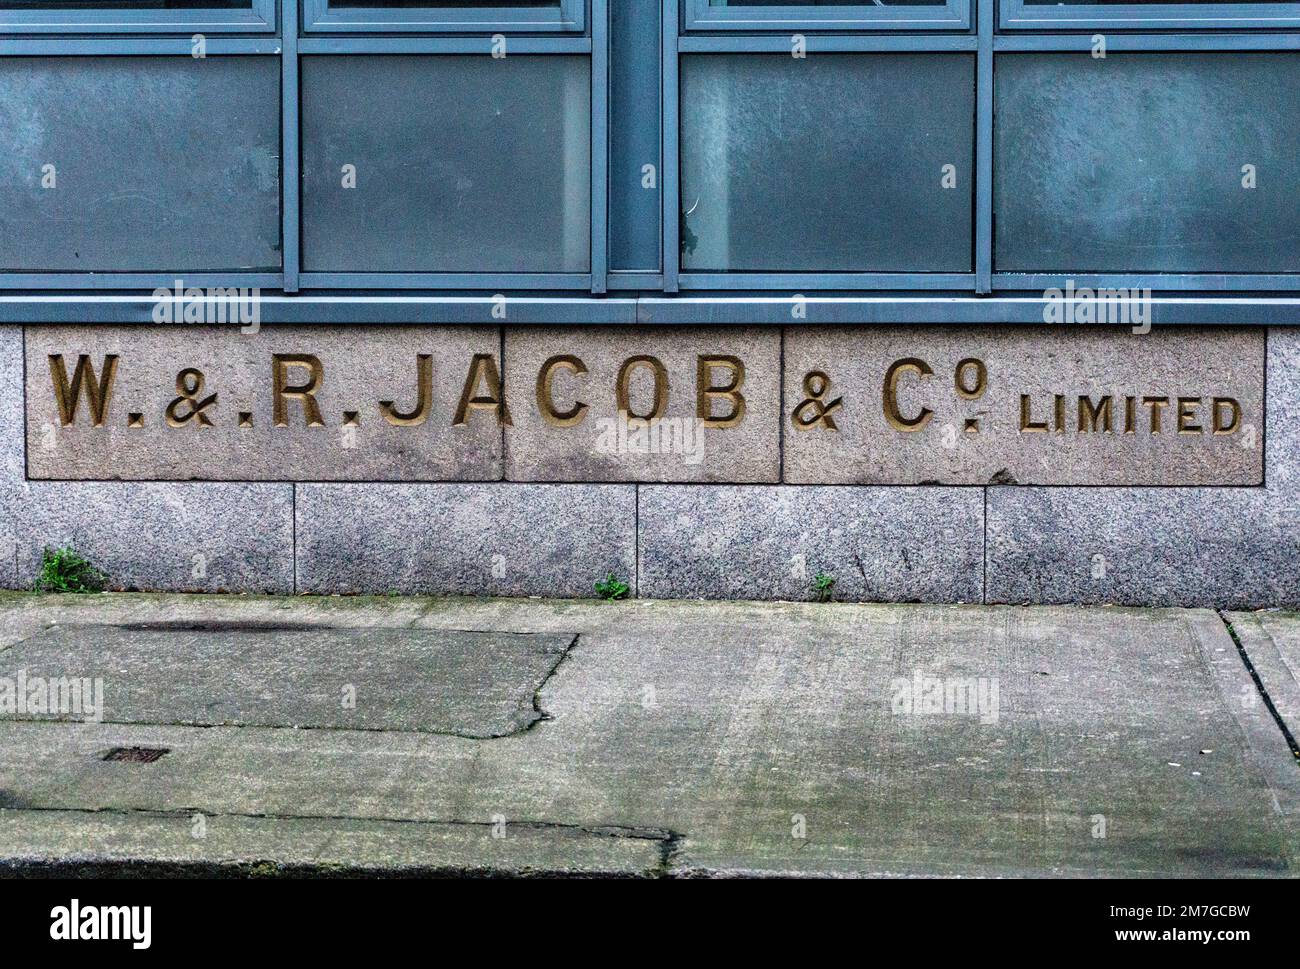 L'ancien panneau pour W & R Jacob & Co. Dans Bishop Street, Dublin, Irlande. Jacobs a fabriqué des biscuits ici jusqu'en 1976. Banque D'Images